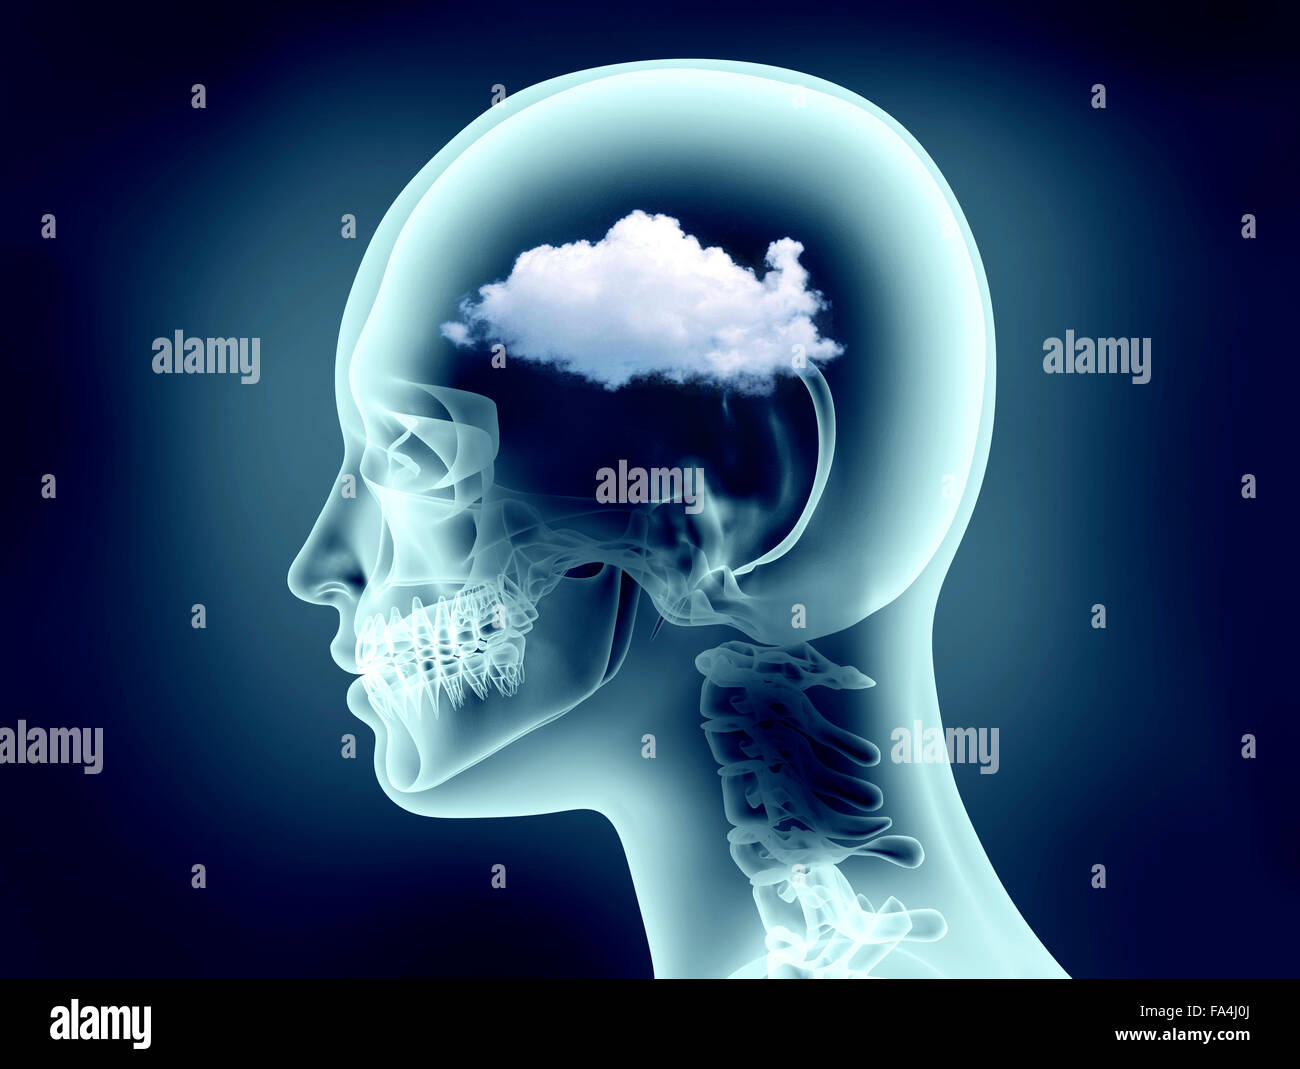 X-ray image de tête humaine avec le cloud Banque D'Images